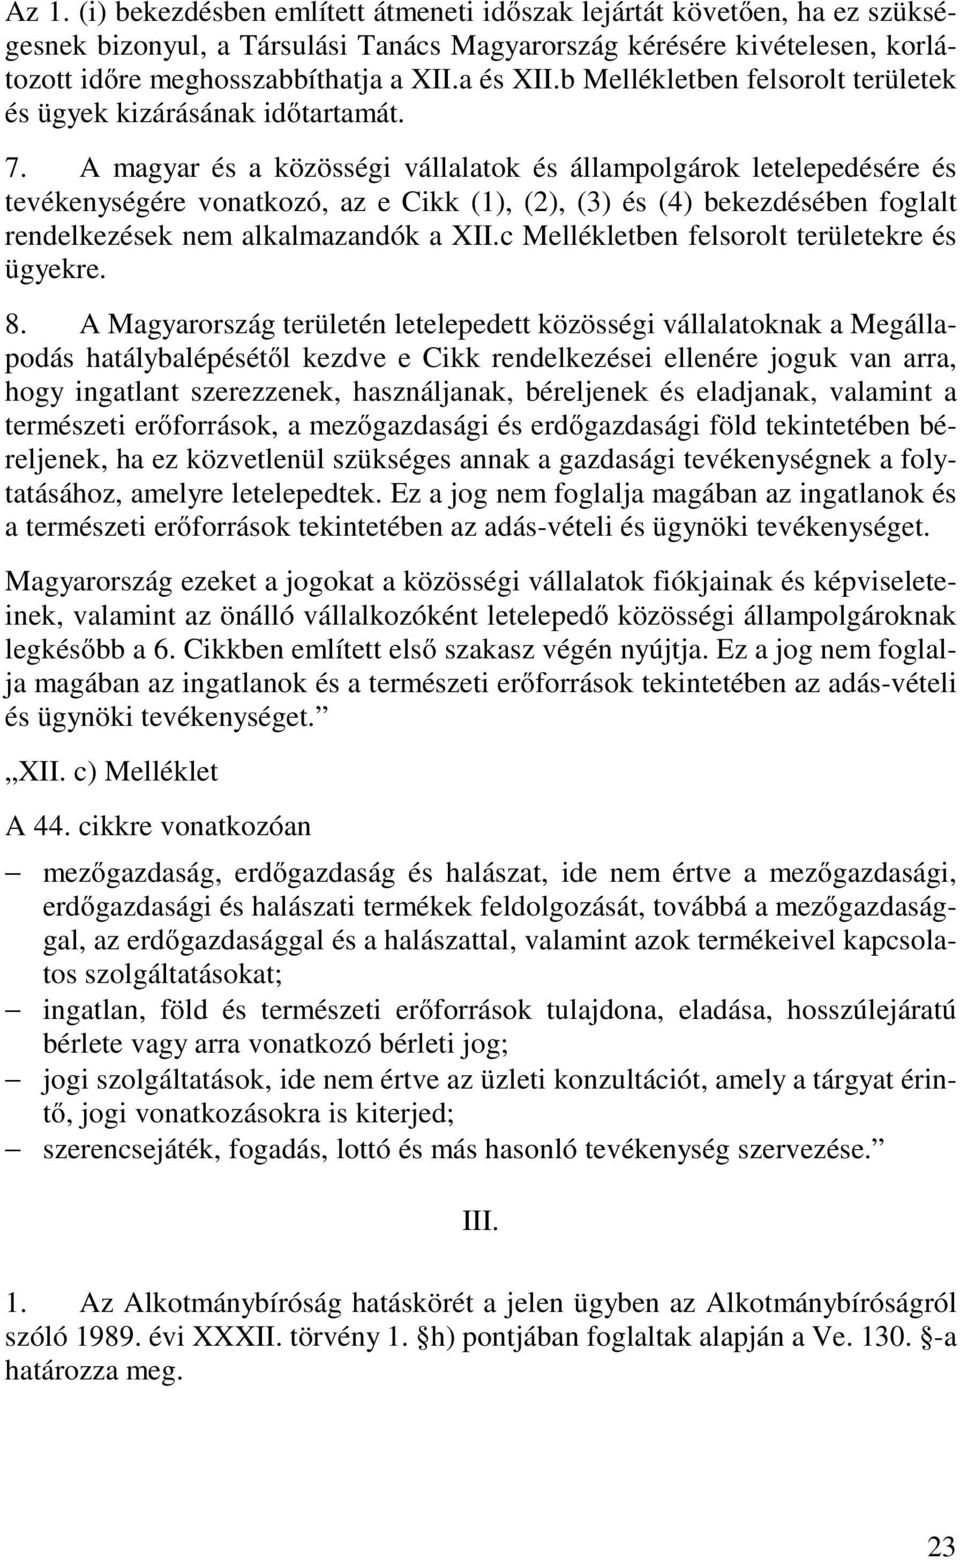 A magyar és a közösségi vállalatok és állampolgárok letelepedésére és tevékenységére vonatkozó, az e Cikk (1), (2), (3) és (4) bekezdésében foglalt rendelkezések nem alkalmazandók a XII.